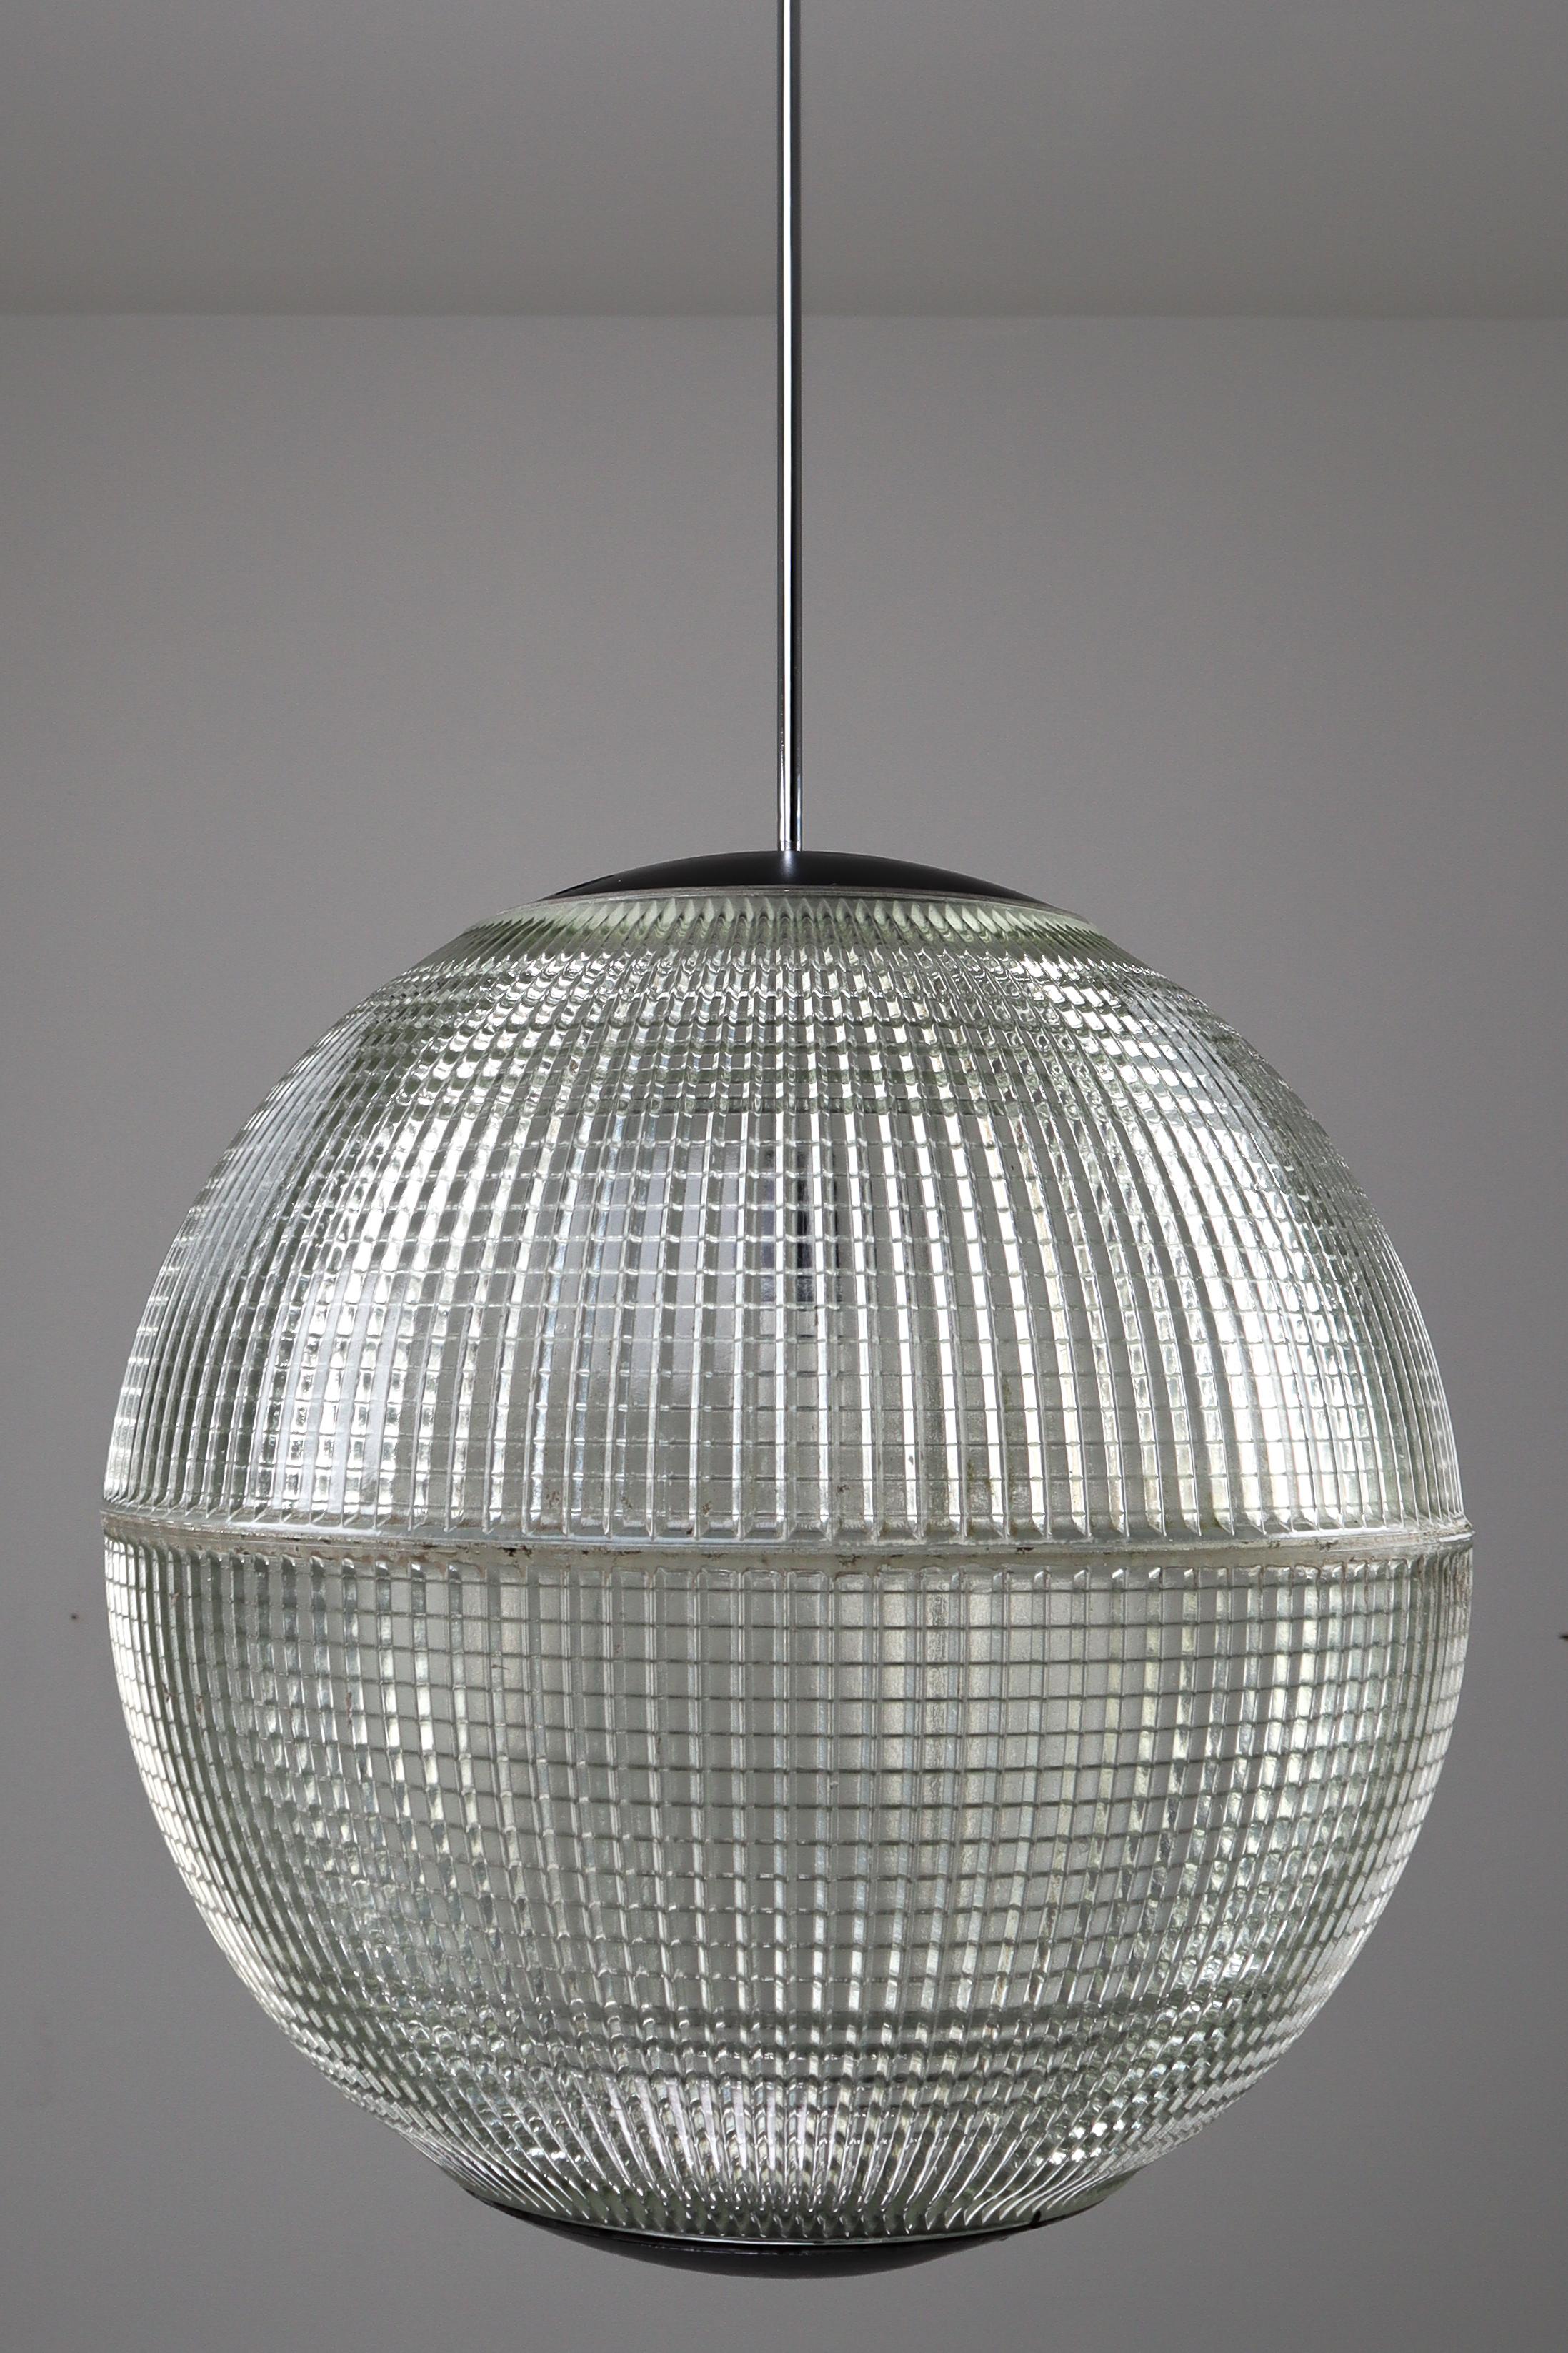 Il s'agit d'un grand lampadaire Holophane original de la fin des années 1960 provenant de Paris, France, transformé en lampe suspendue. La marque de fabrique des luminaires Holophane, ou appareils d'éclairage, est le réflecteur / réfacteur en verre